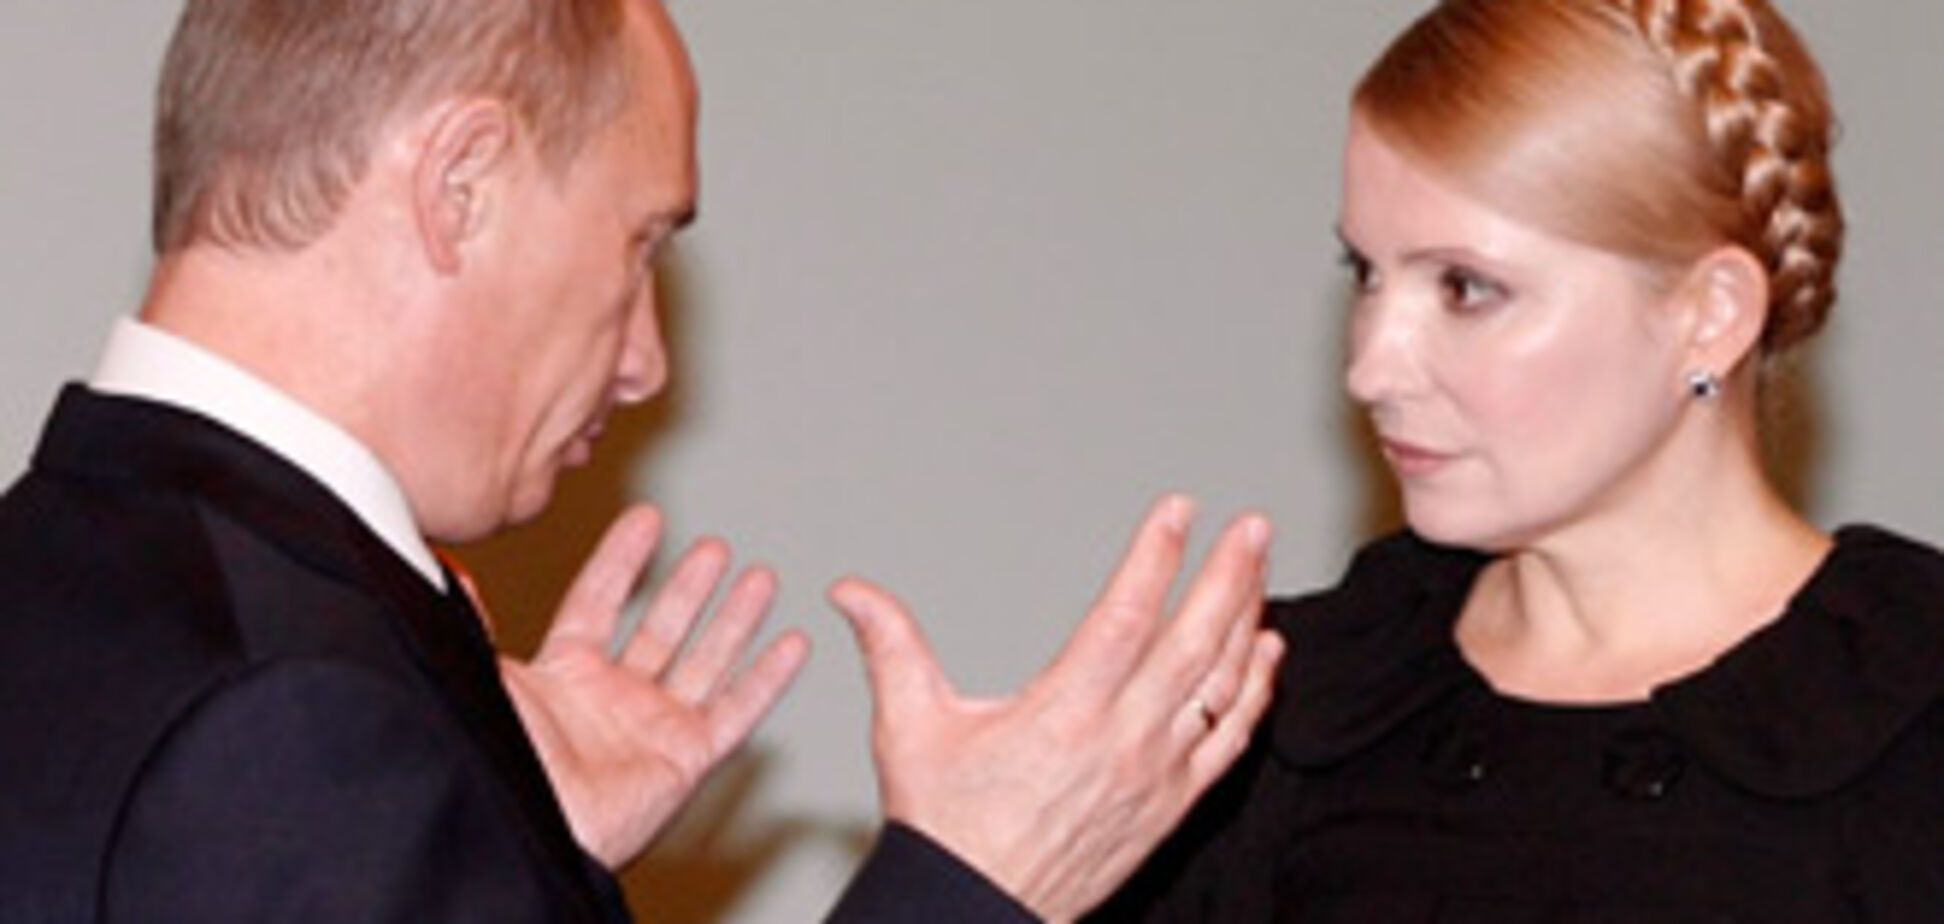 Тимошенко особисто привітає Путіна з Днем Народження